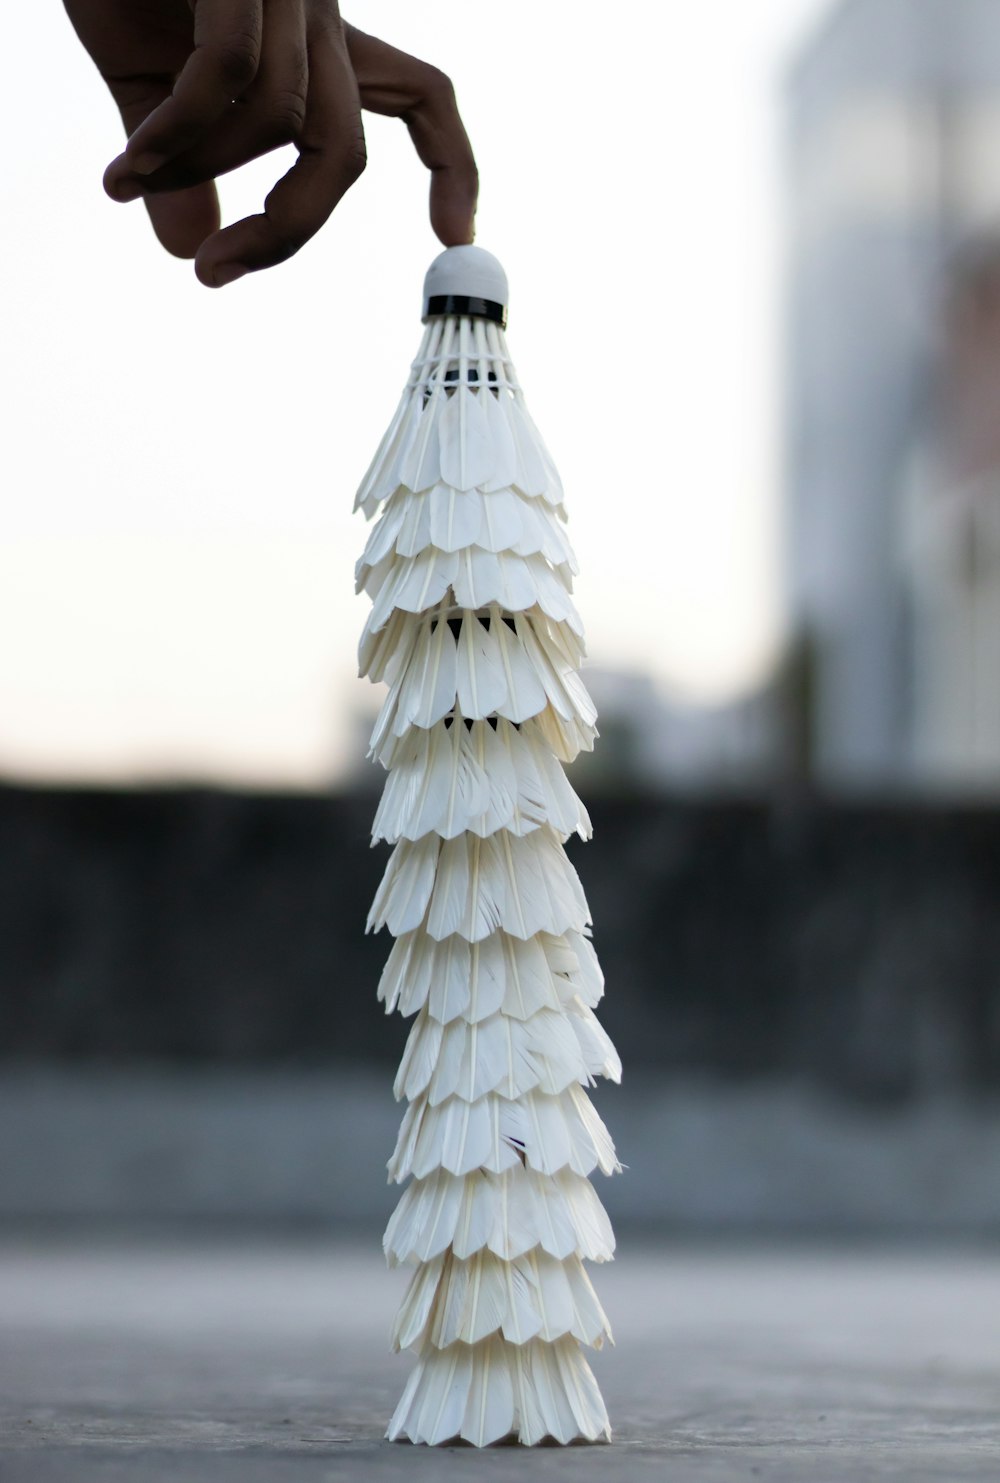 décor en forme de cône en bois blanc